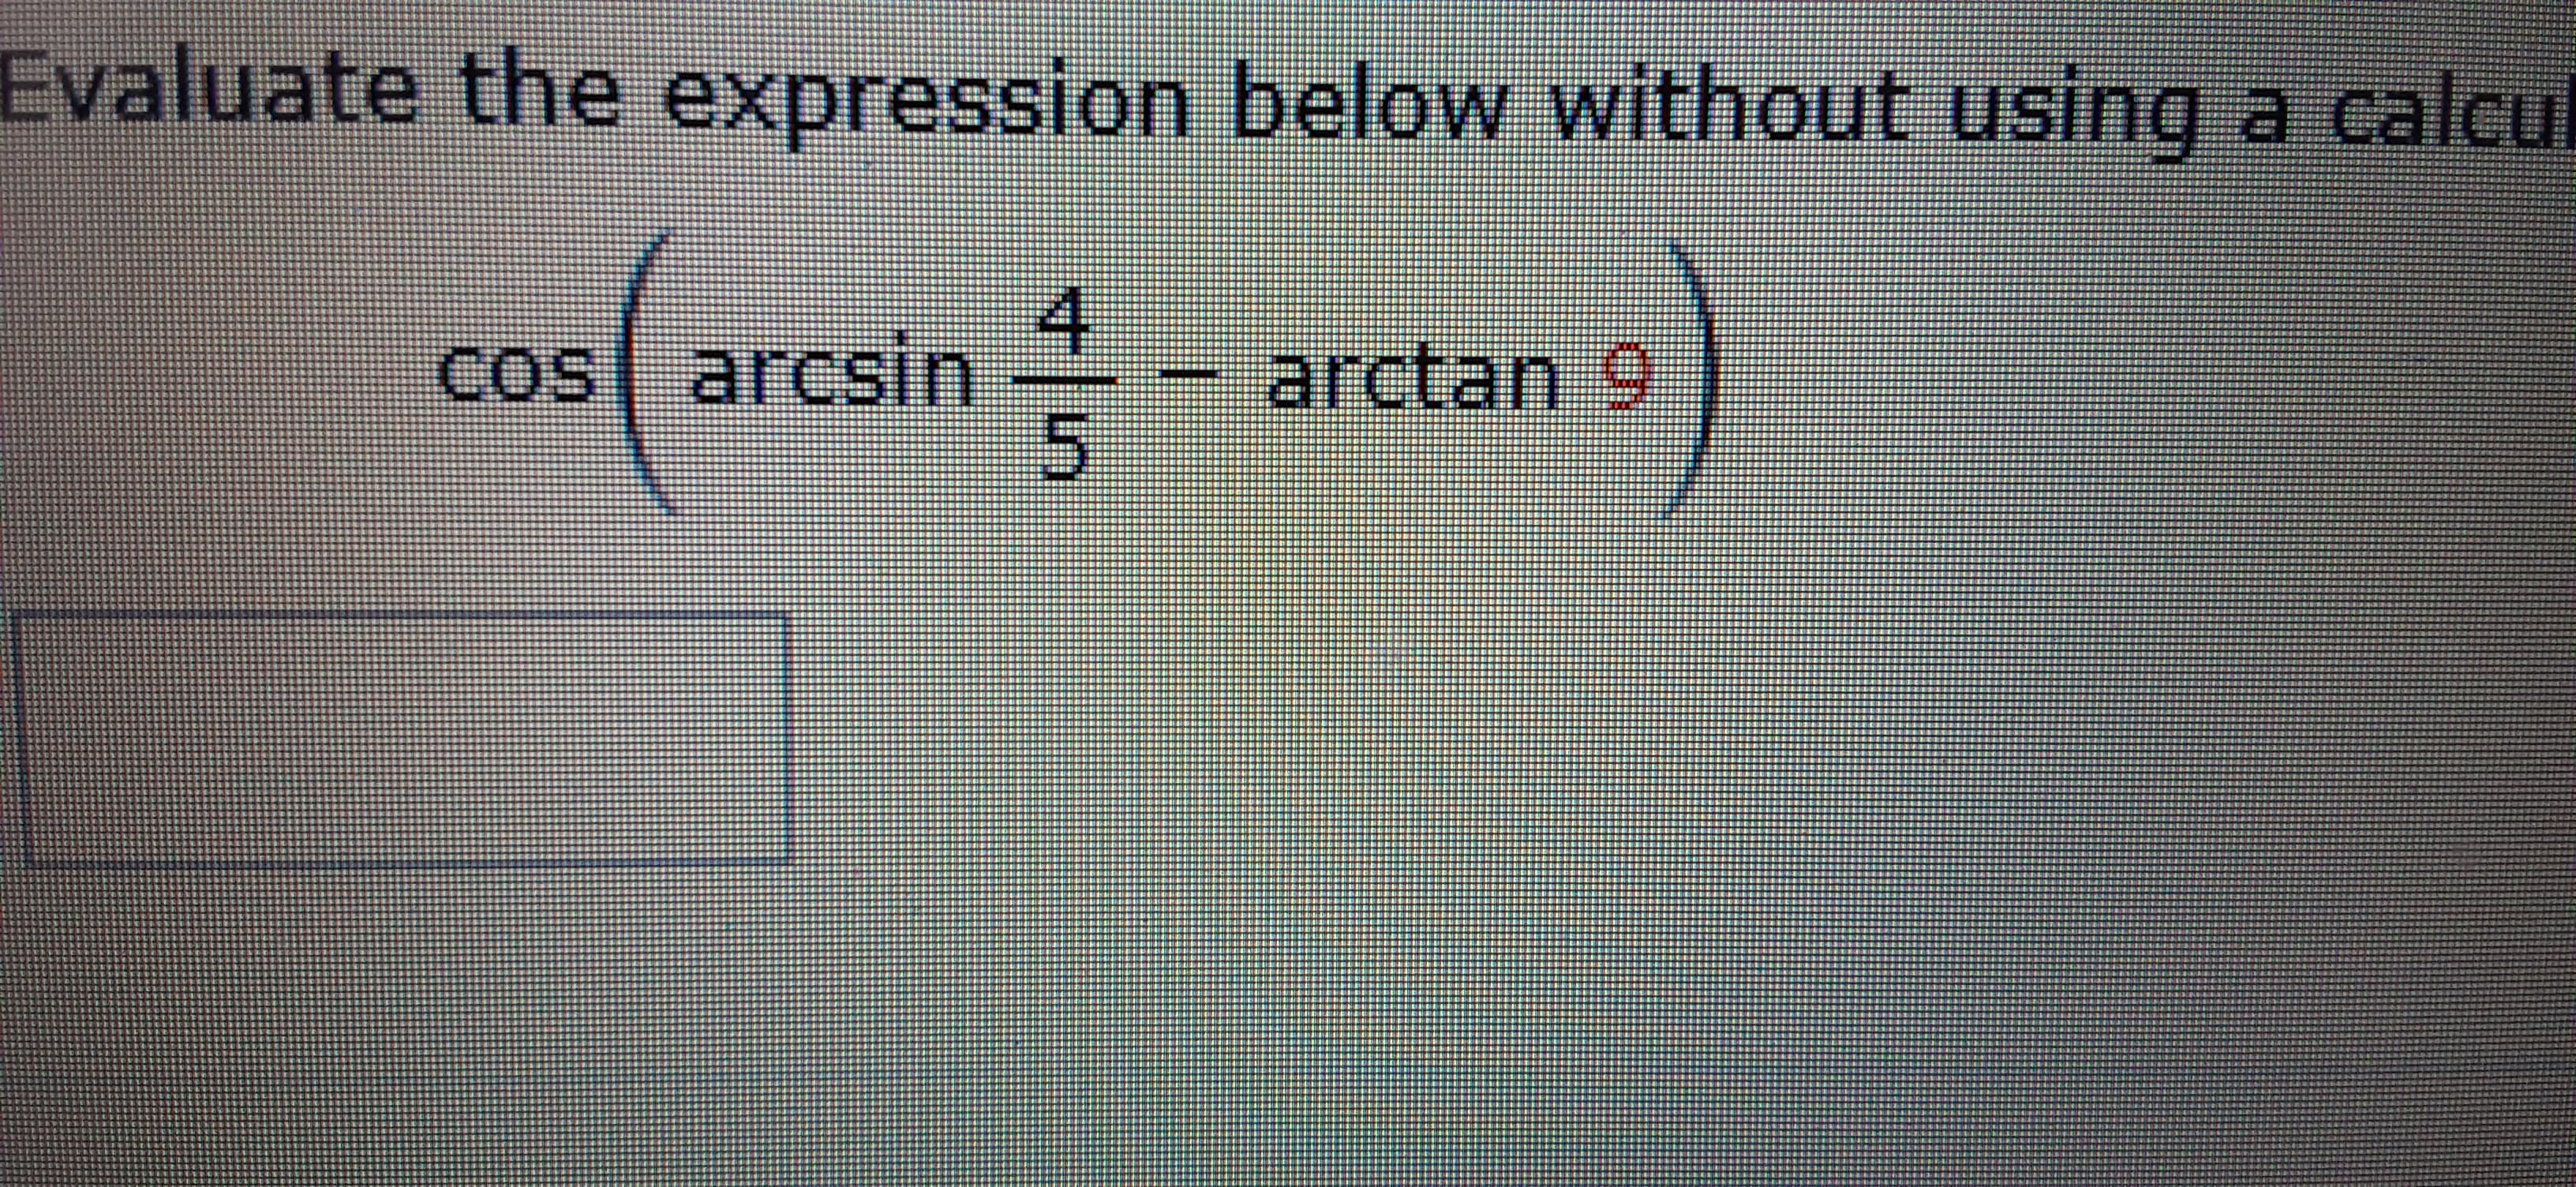 Cos
cos arcsin
4.
arctan 9
